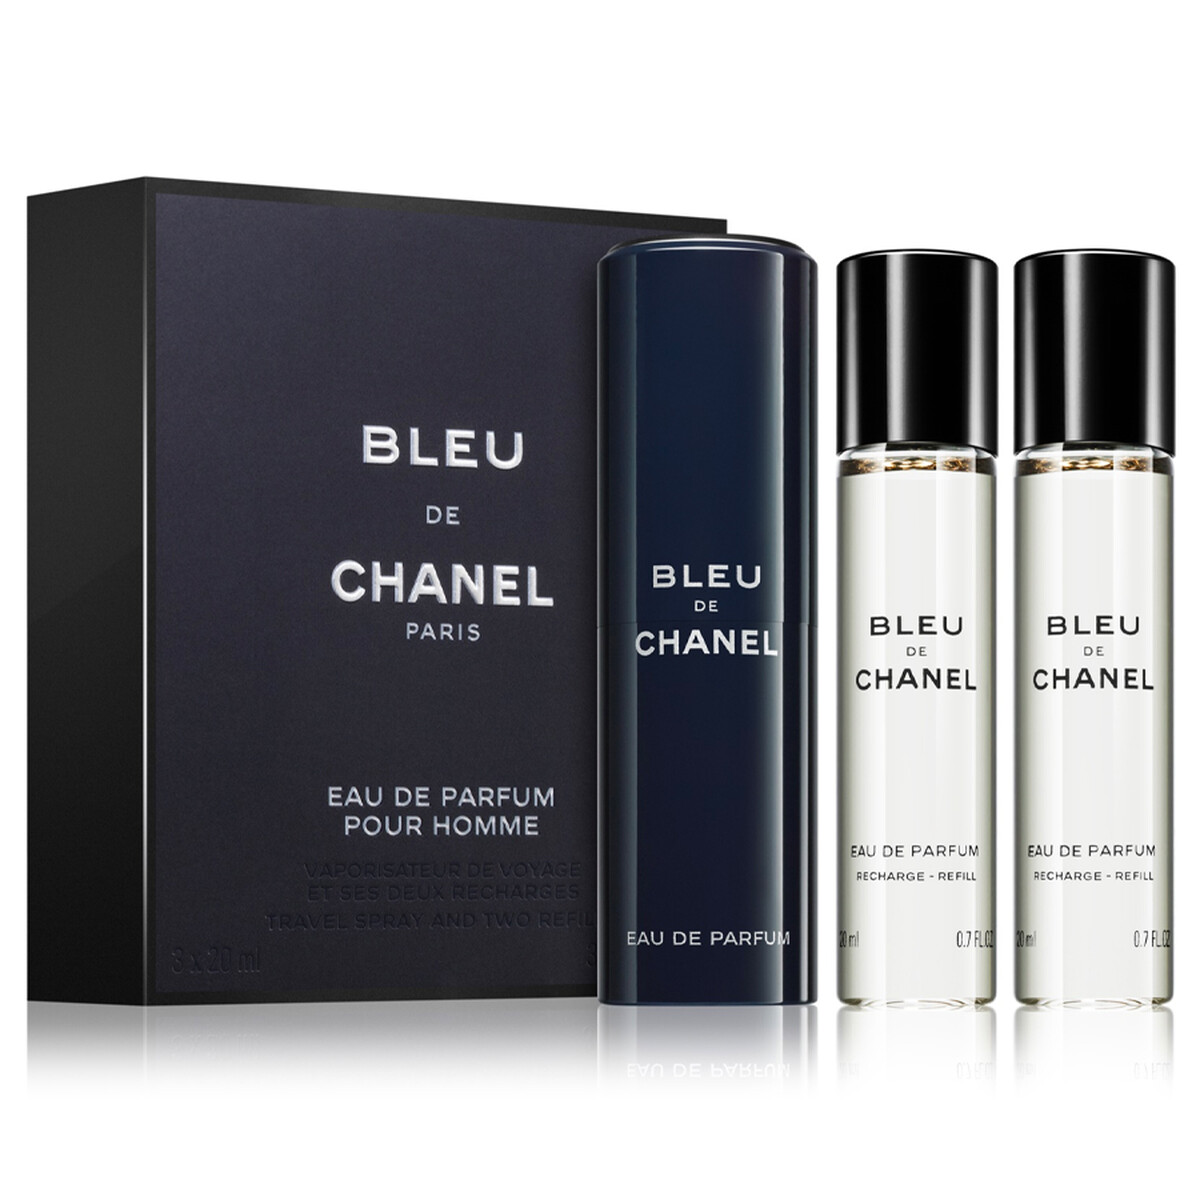 Chanel Bleu Eau De Parfum - 3X20Ml » Fragances For Him » Fragances...